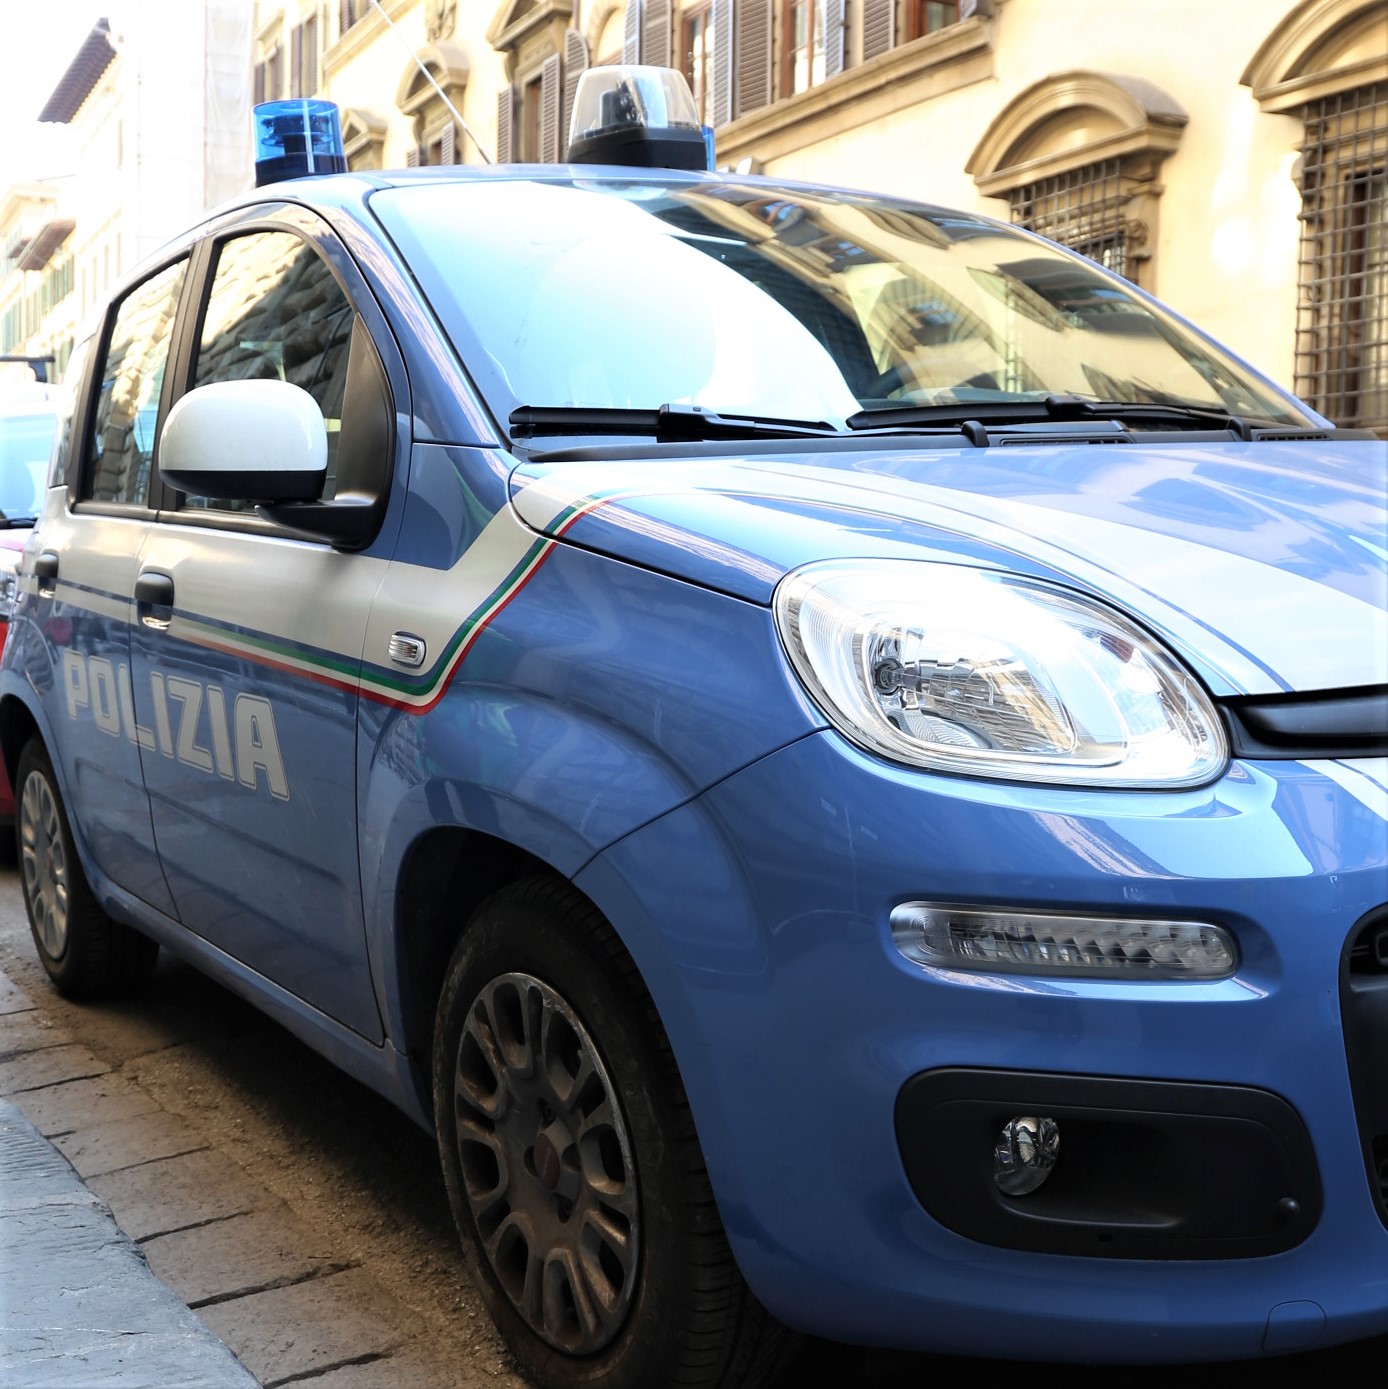 Polizia di Stato (foto archivio Antonello Serino)